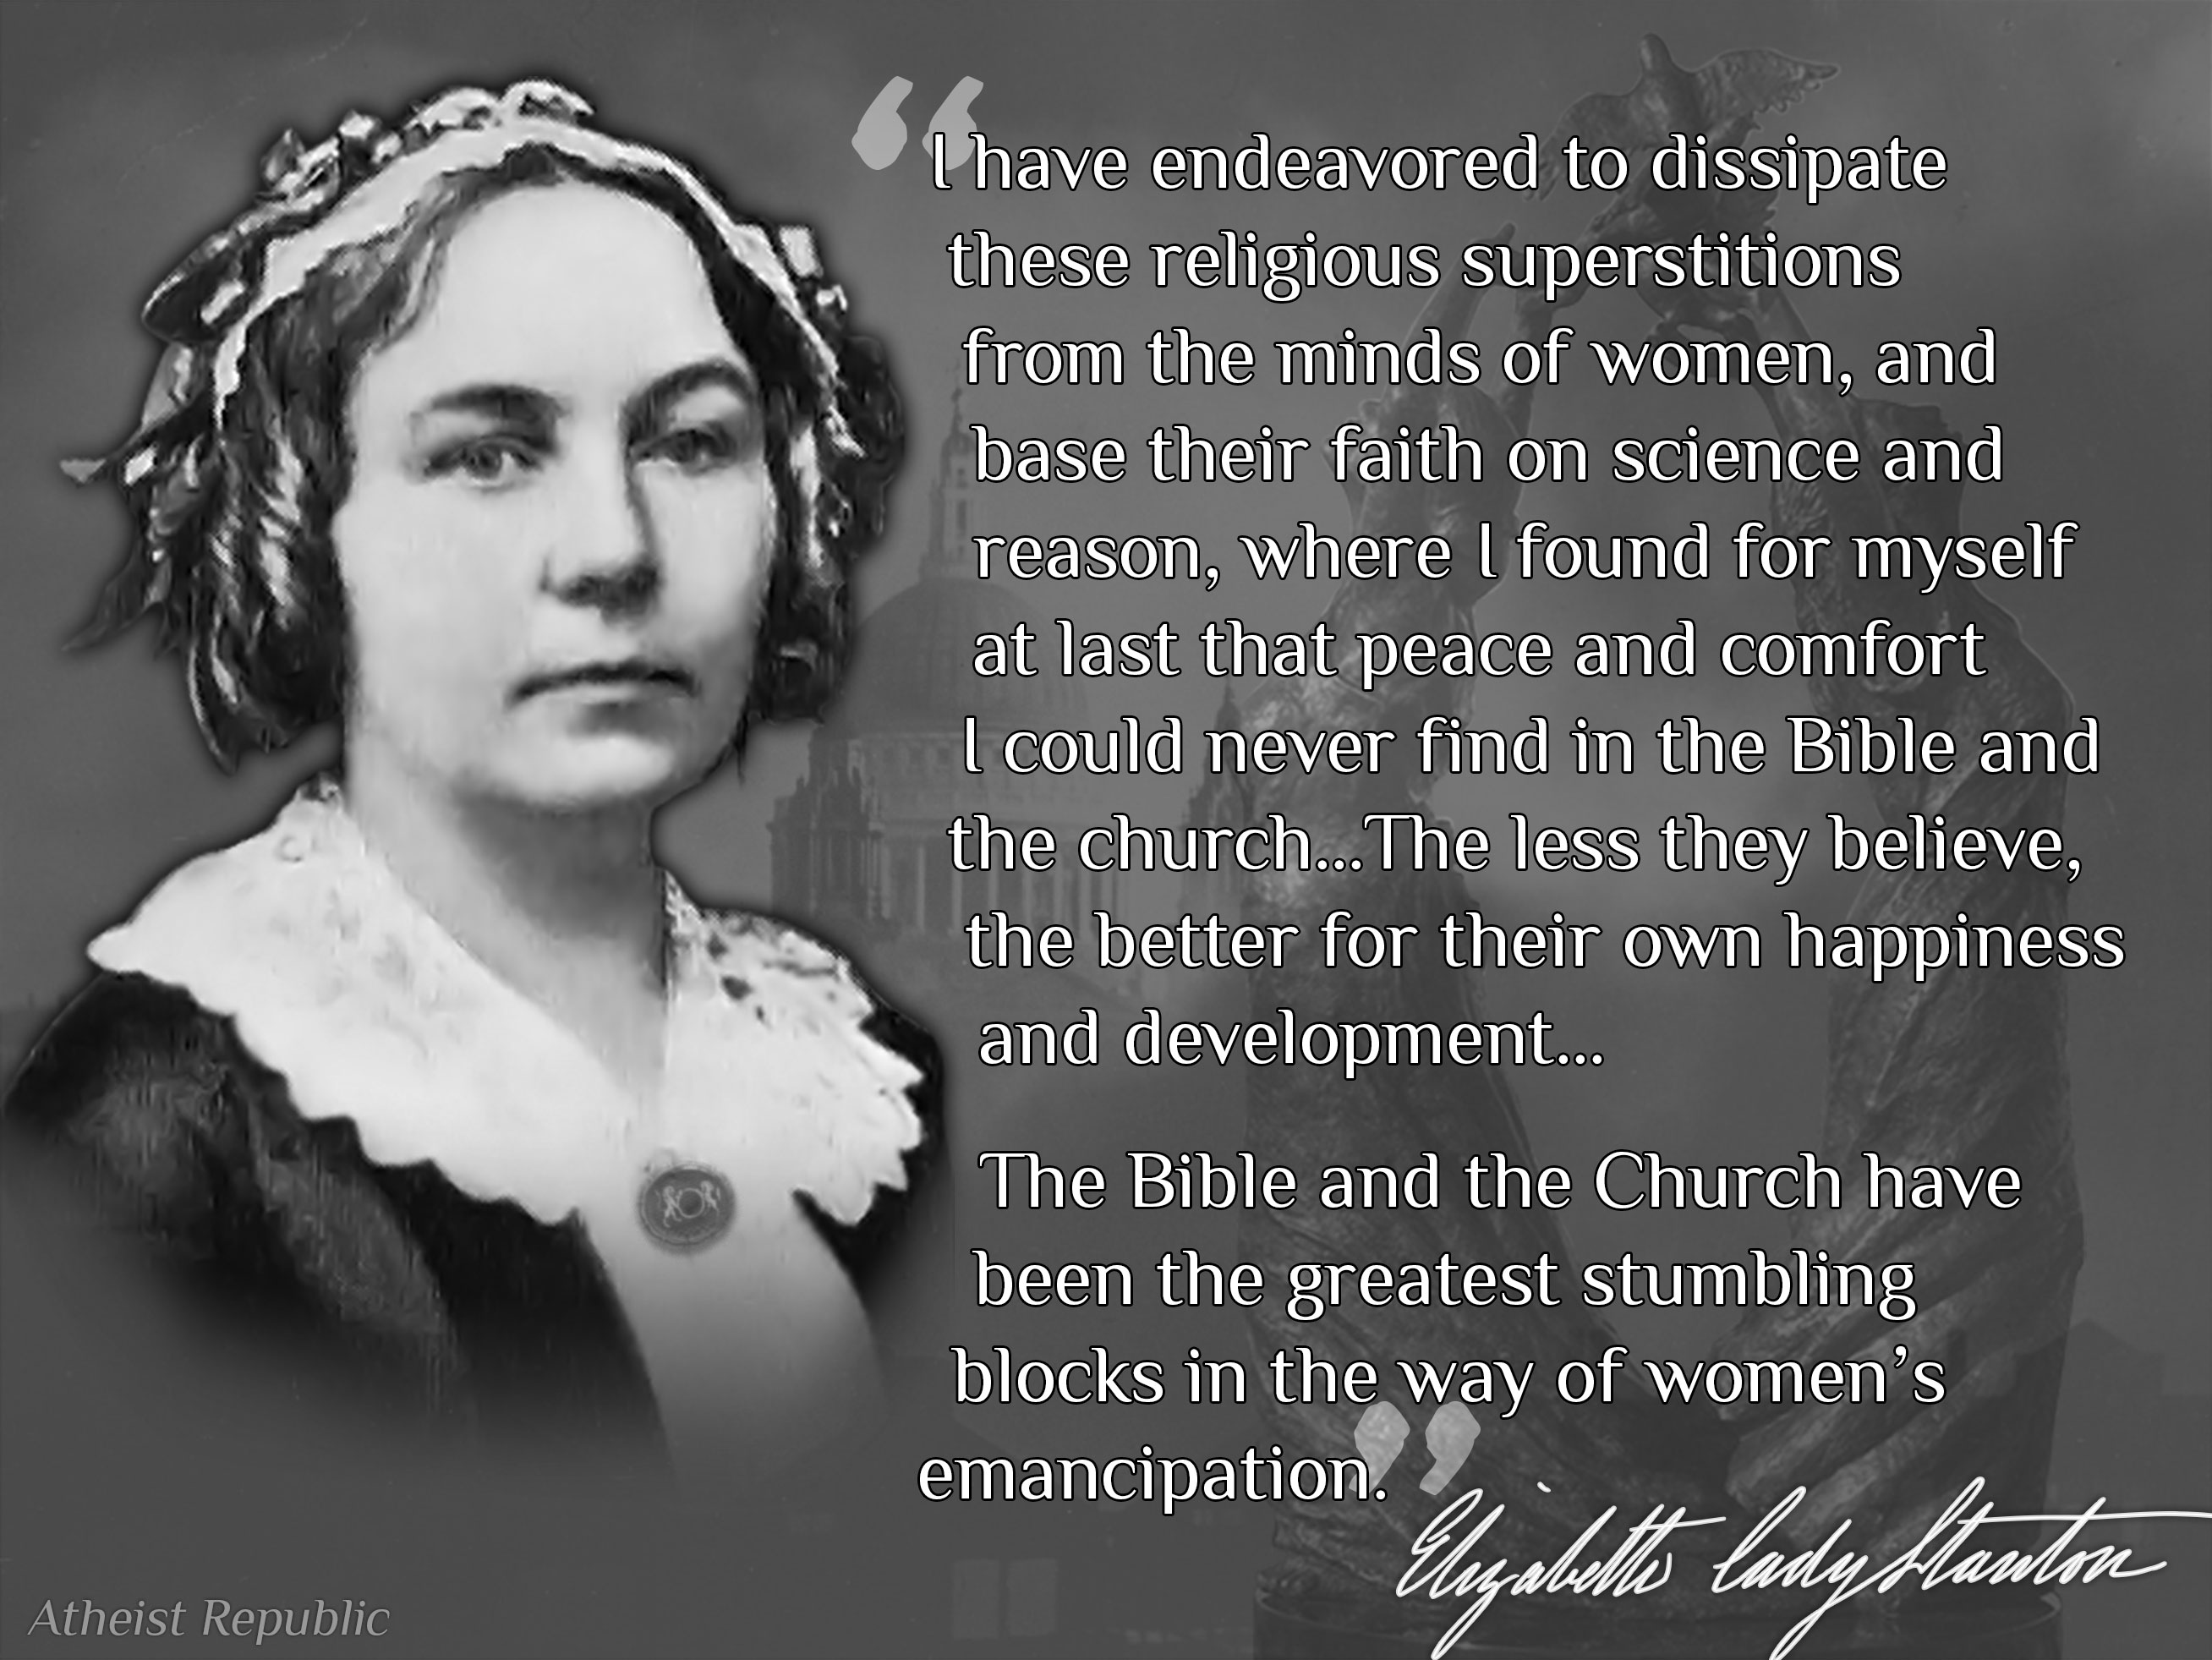 Elizabeth Cady Stanton Quotes